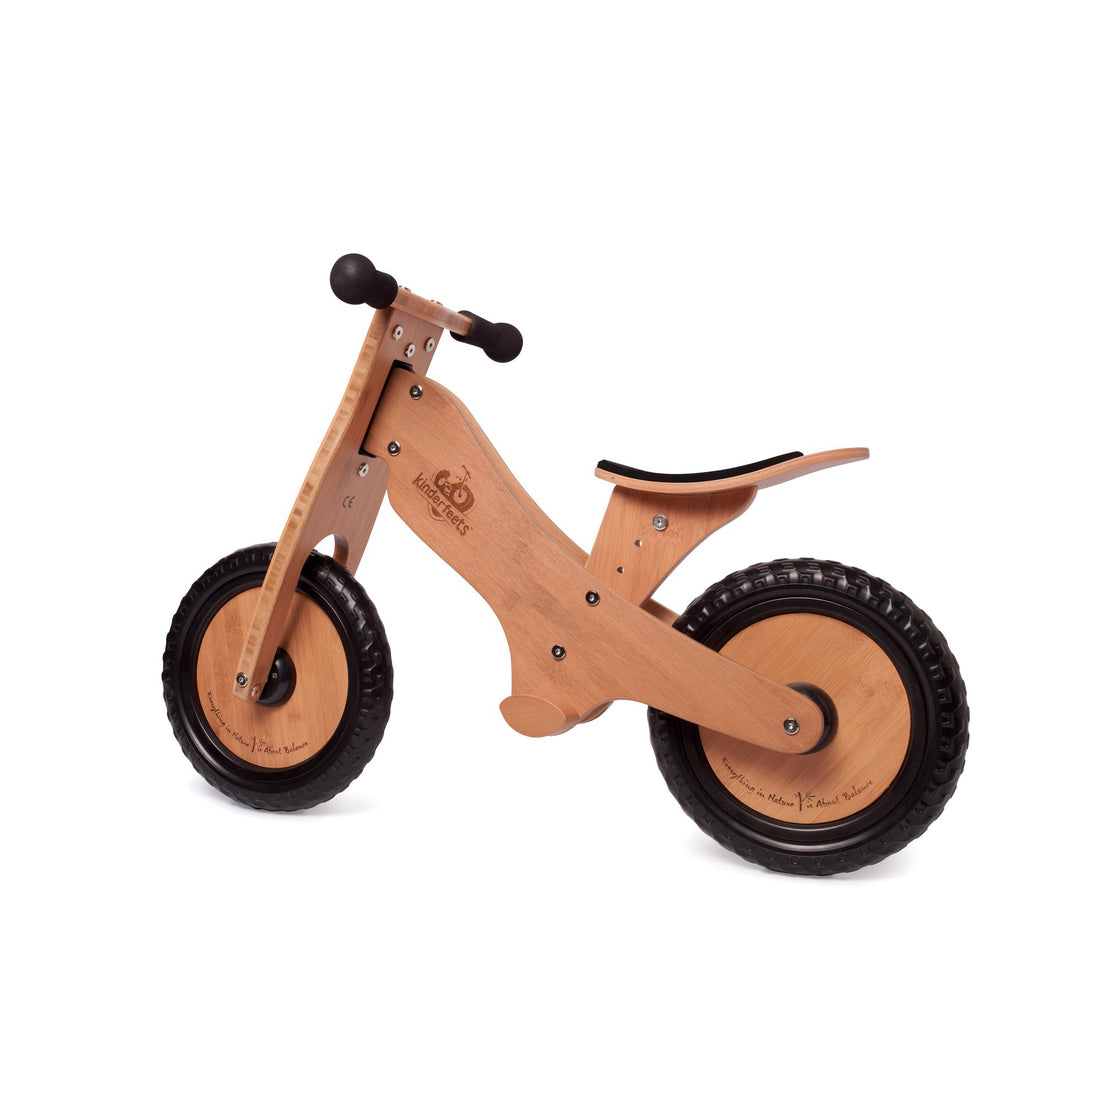 kinderfeets-balance-bike-bamboo-84x35-6x55cm-kinf-98571